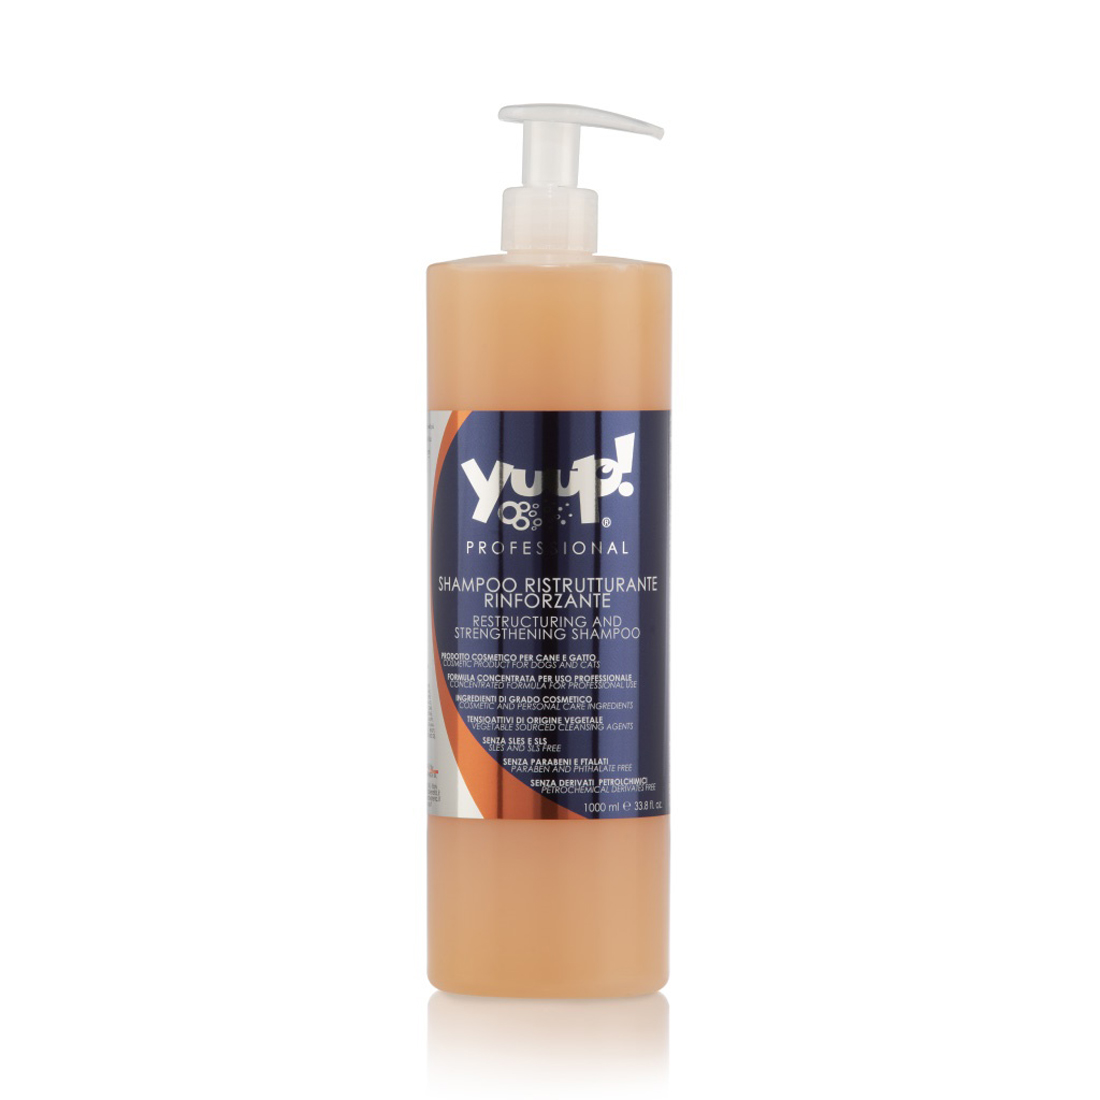 Yuup! Professional Shampoo Aufbau und Stärkung